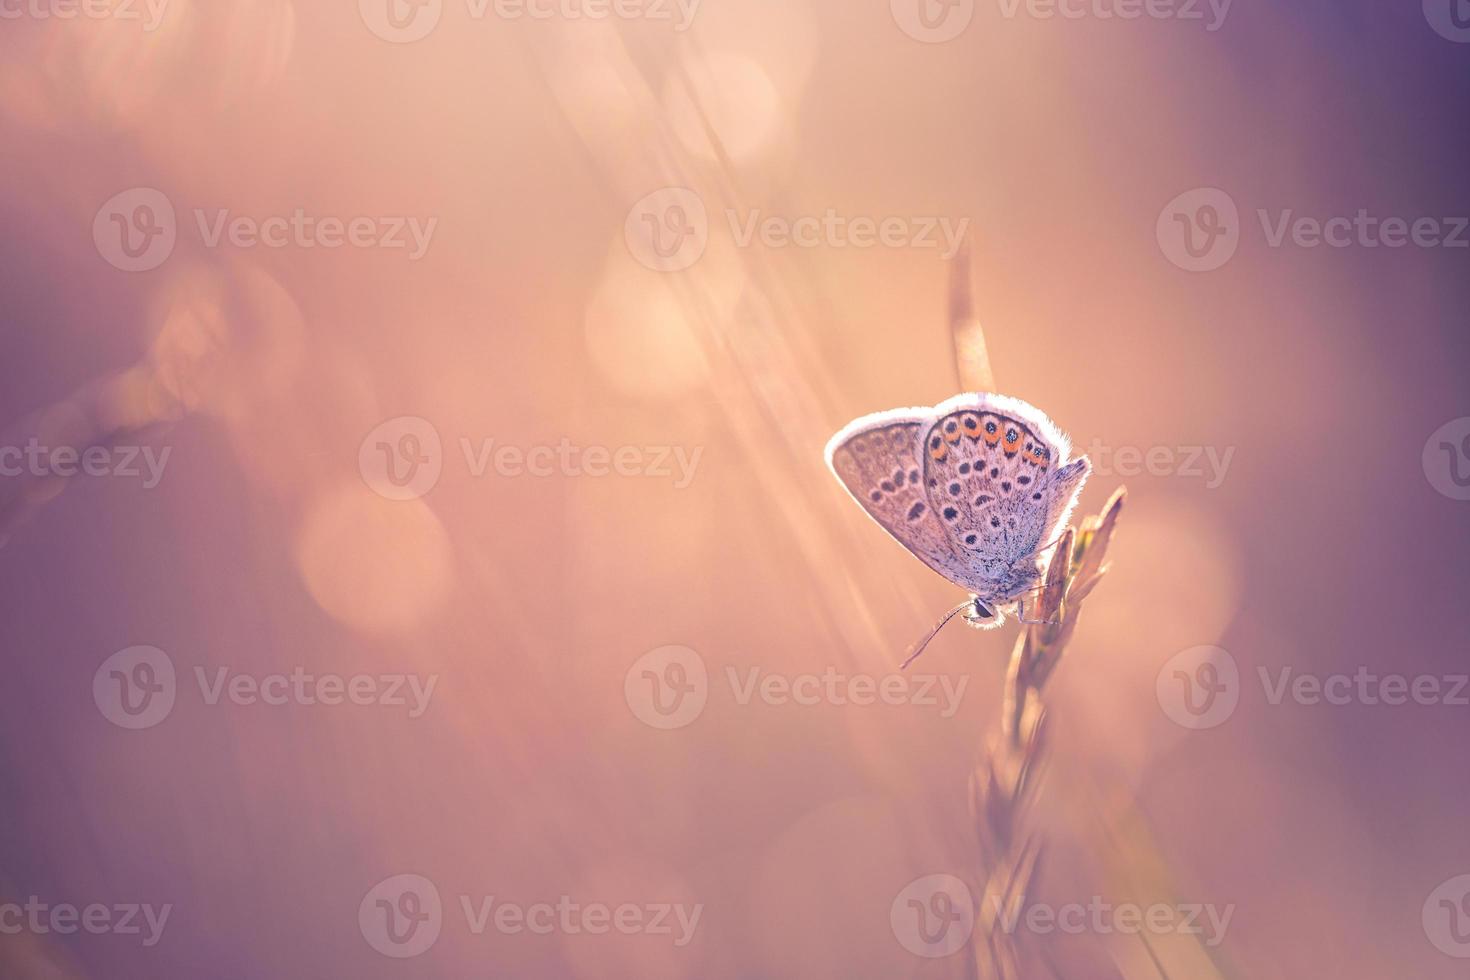 campo de prado natureza luz do sol com borboleta como pano de fundo outono. fundo de prado lindo outono seco. incrível inspirar closeup da natureza. sonho fantasia majestosa folhagem natural, tranquilo blur bokeh foto